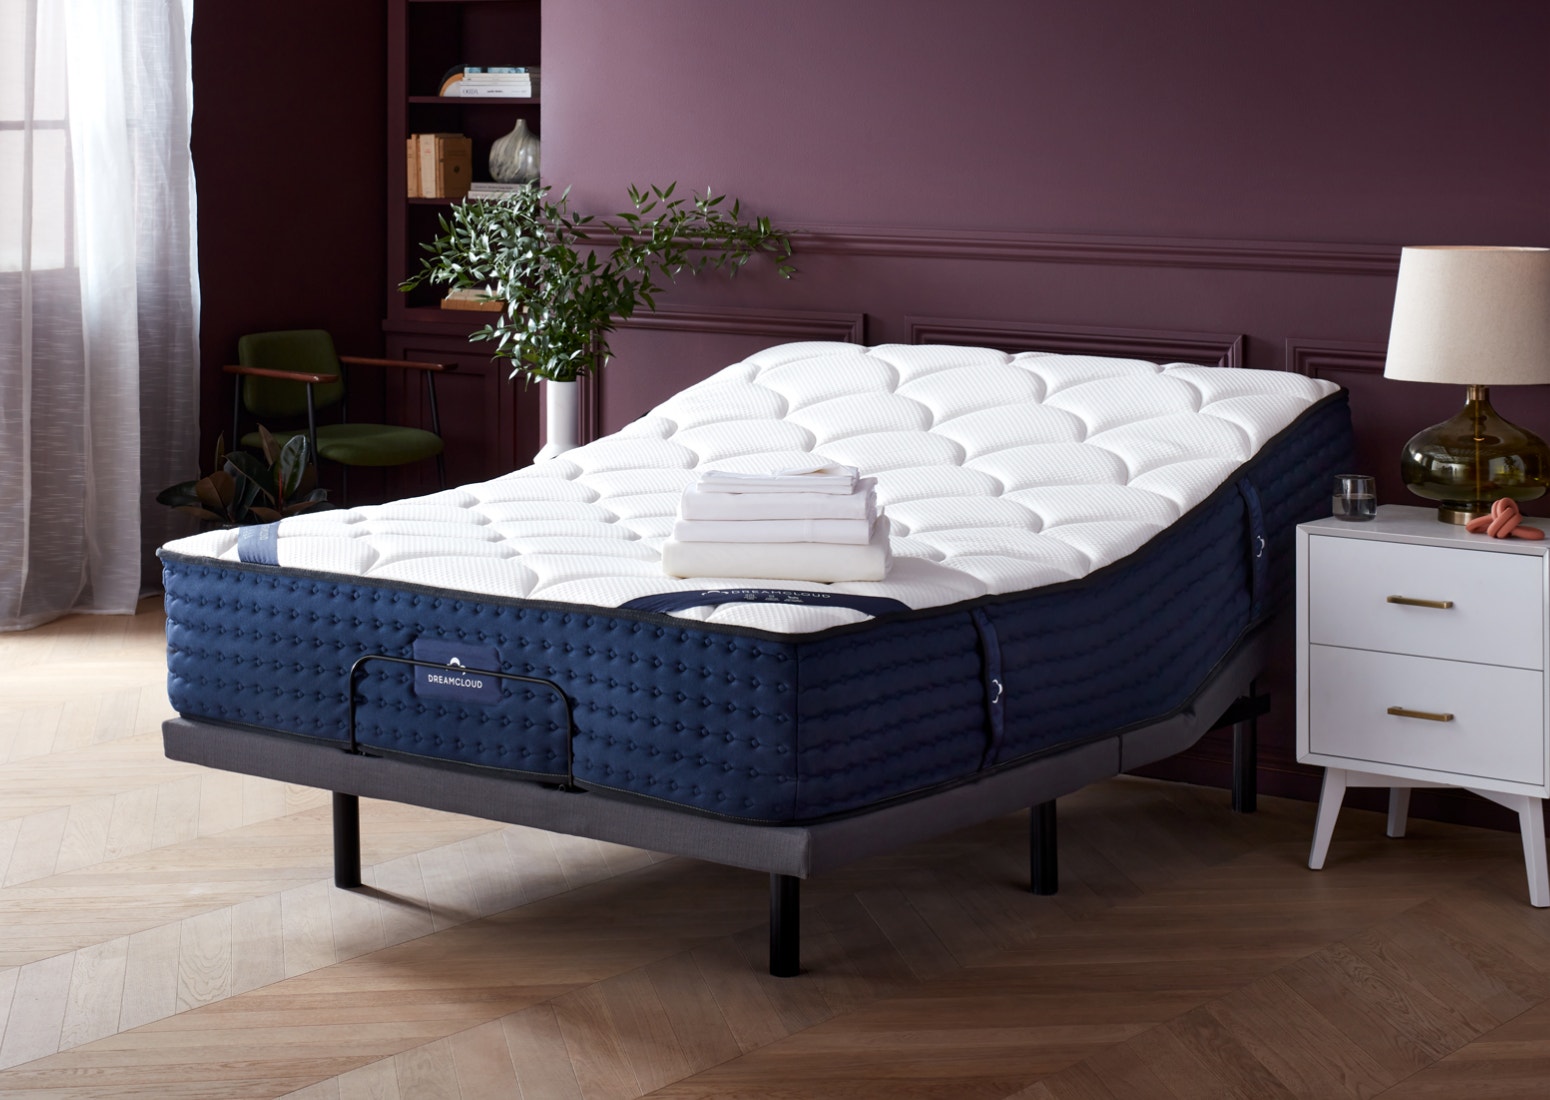 Split King Size Adjustable Bed Frames, Adjustable Bed Base King